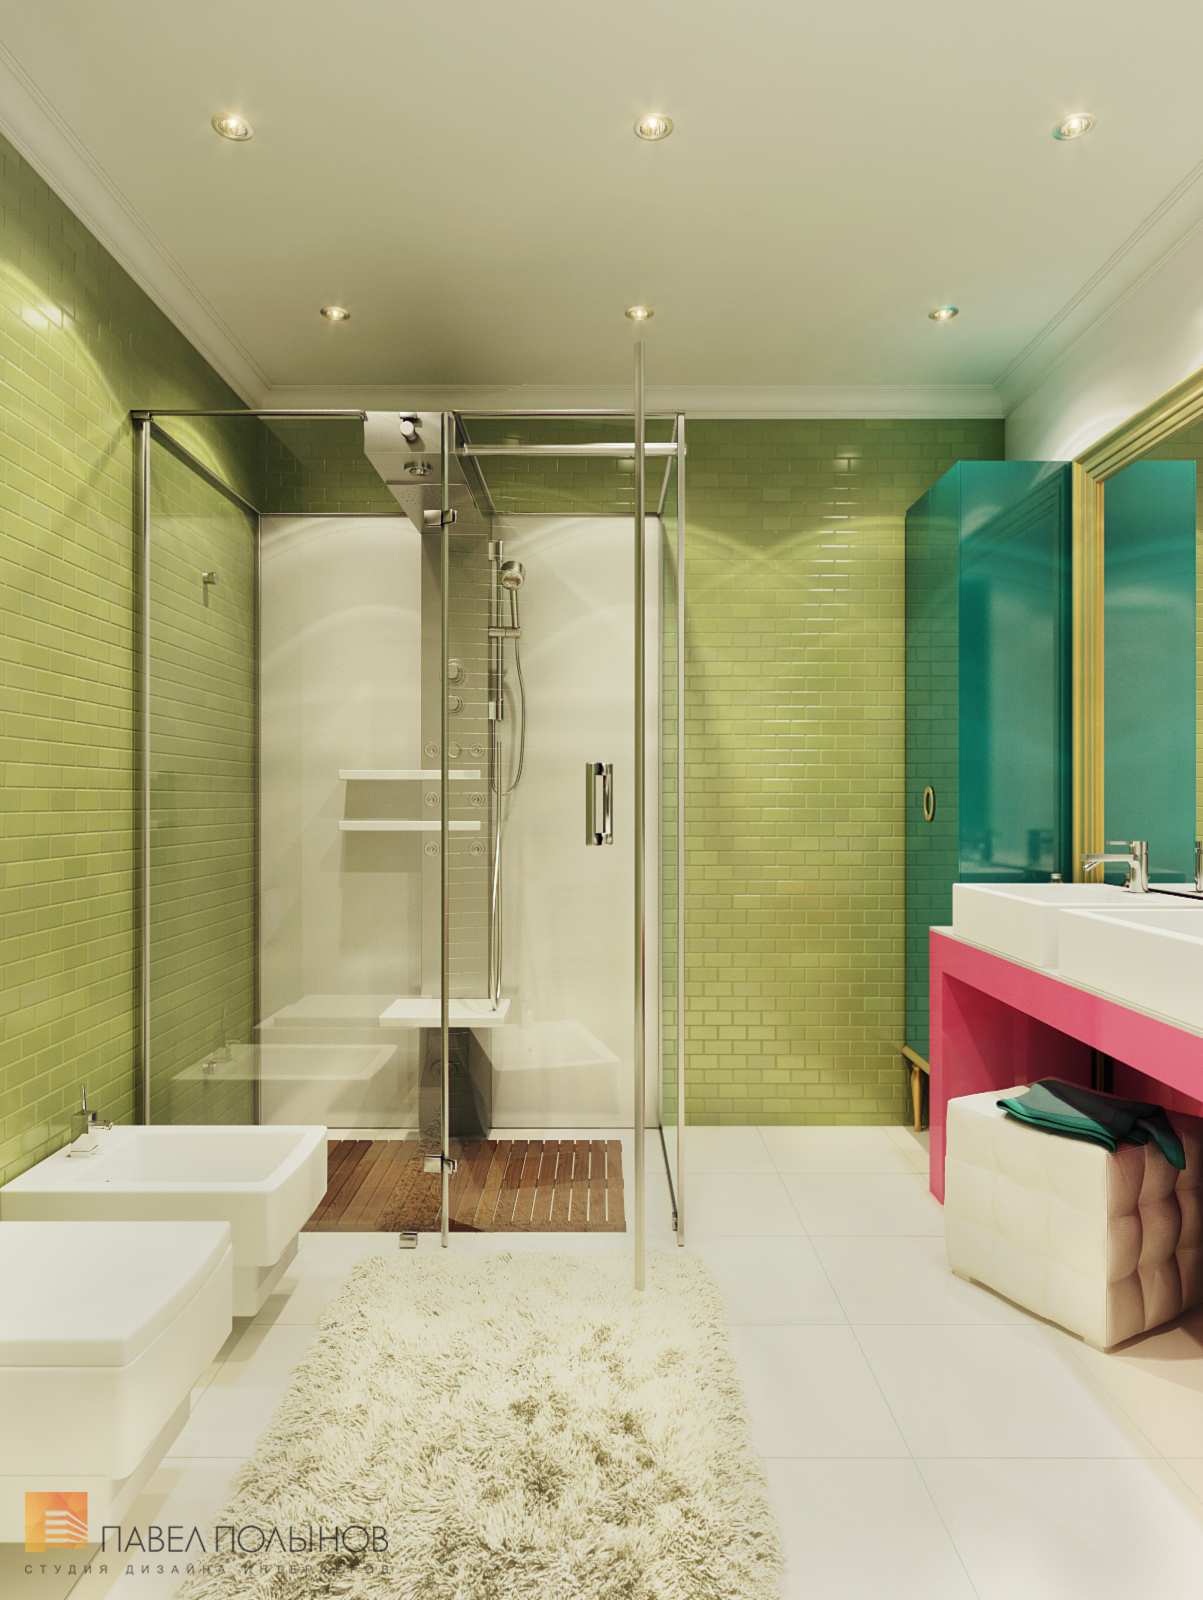 Фото интерьер ванной комнаты из проекта «Дизайн интерьера квартиры в ЖК «Ижора Парк»»